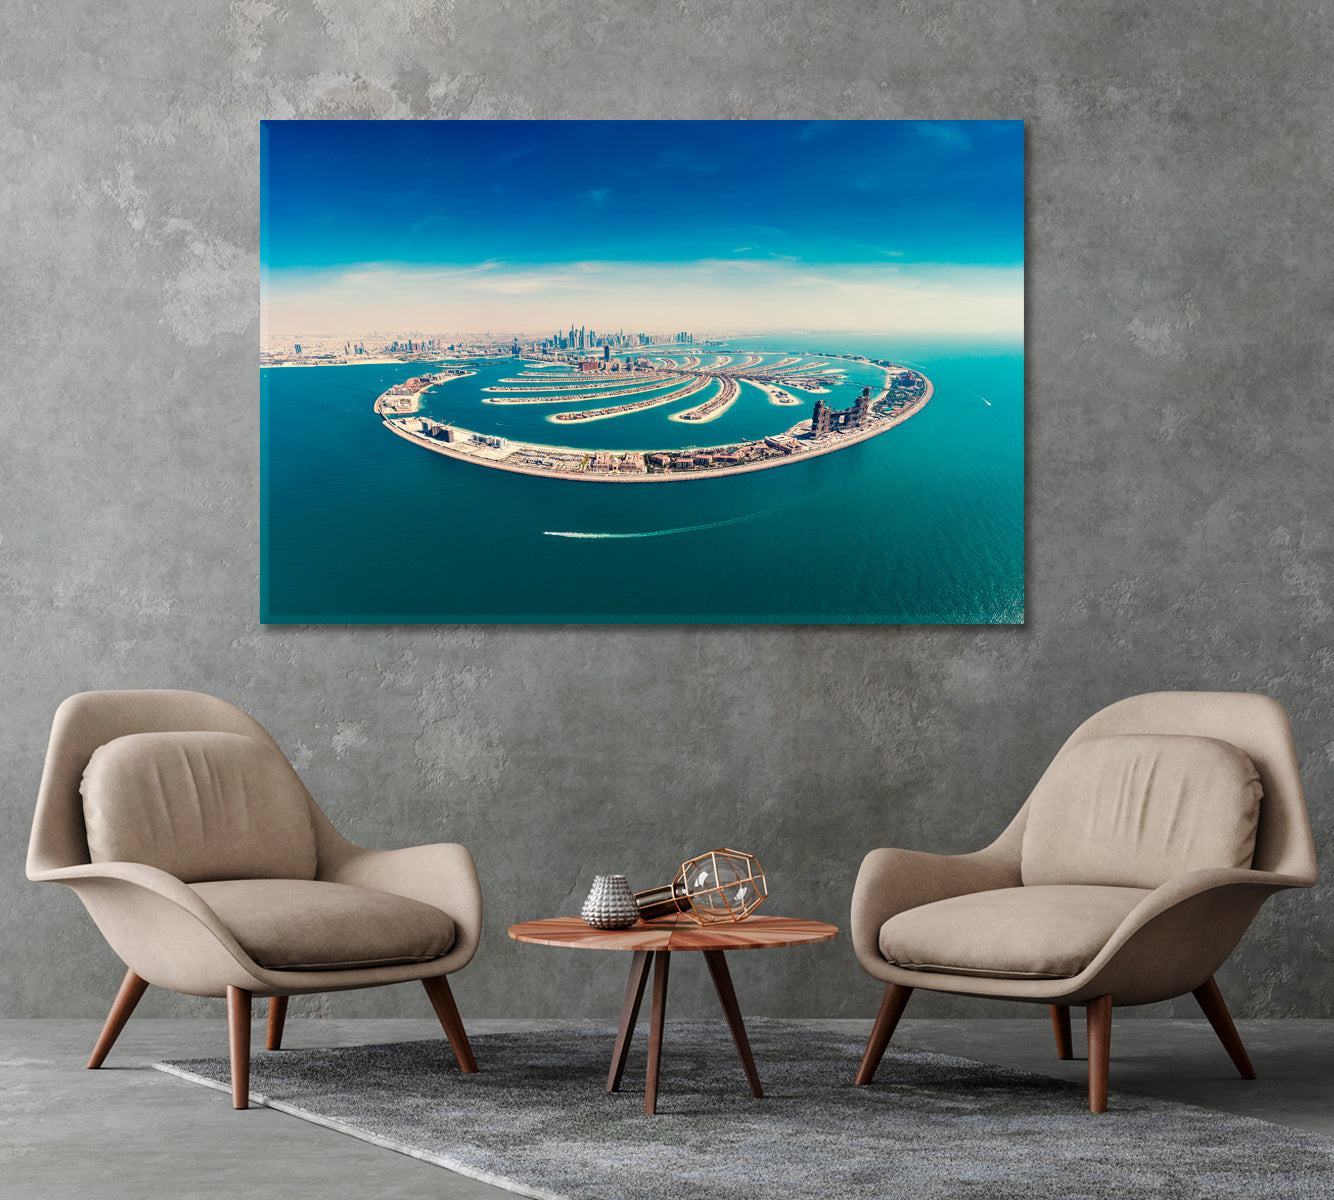 Palm Jumeirah Island in Dubai UAE Canvas Print-Canvas Print-CetArt-1 Panel-24x16 inches-CetArt